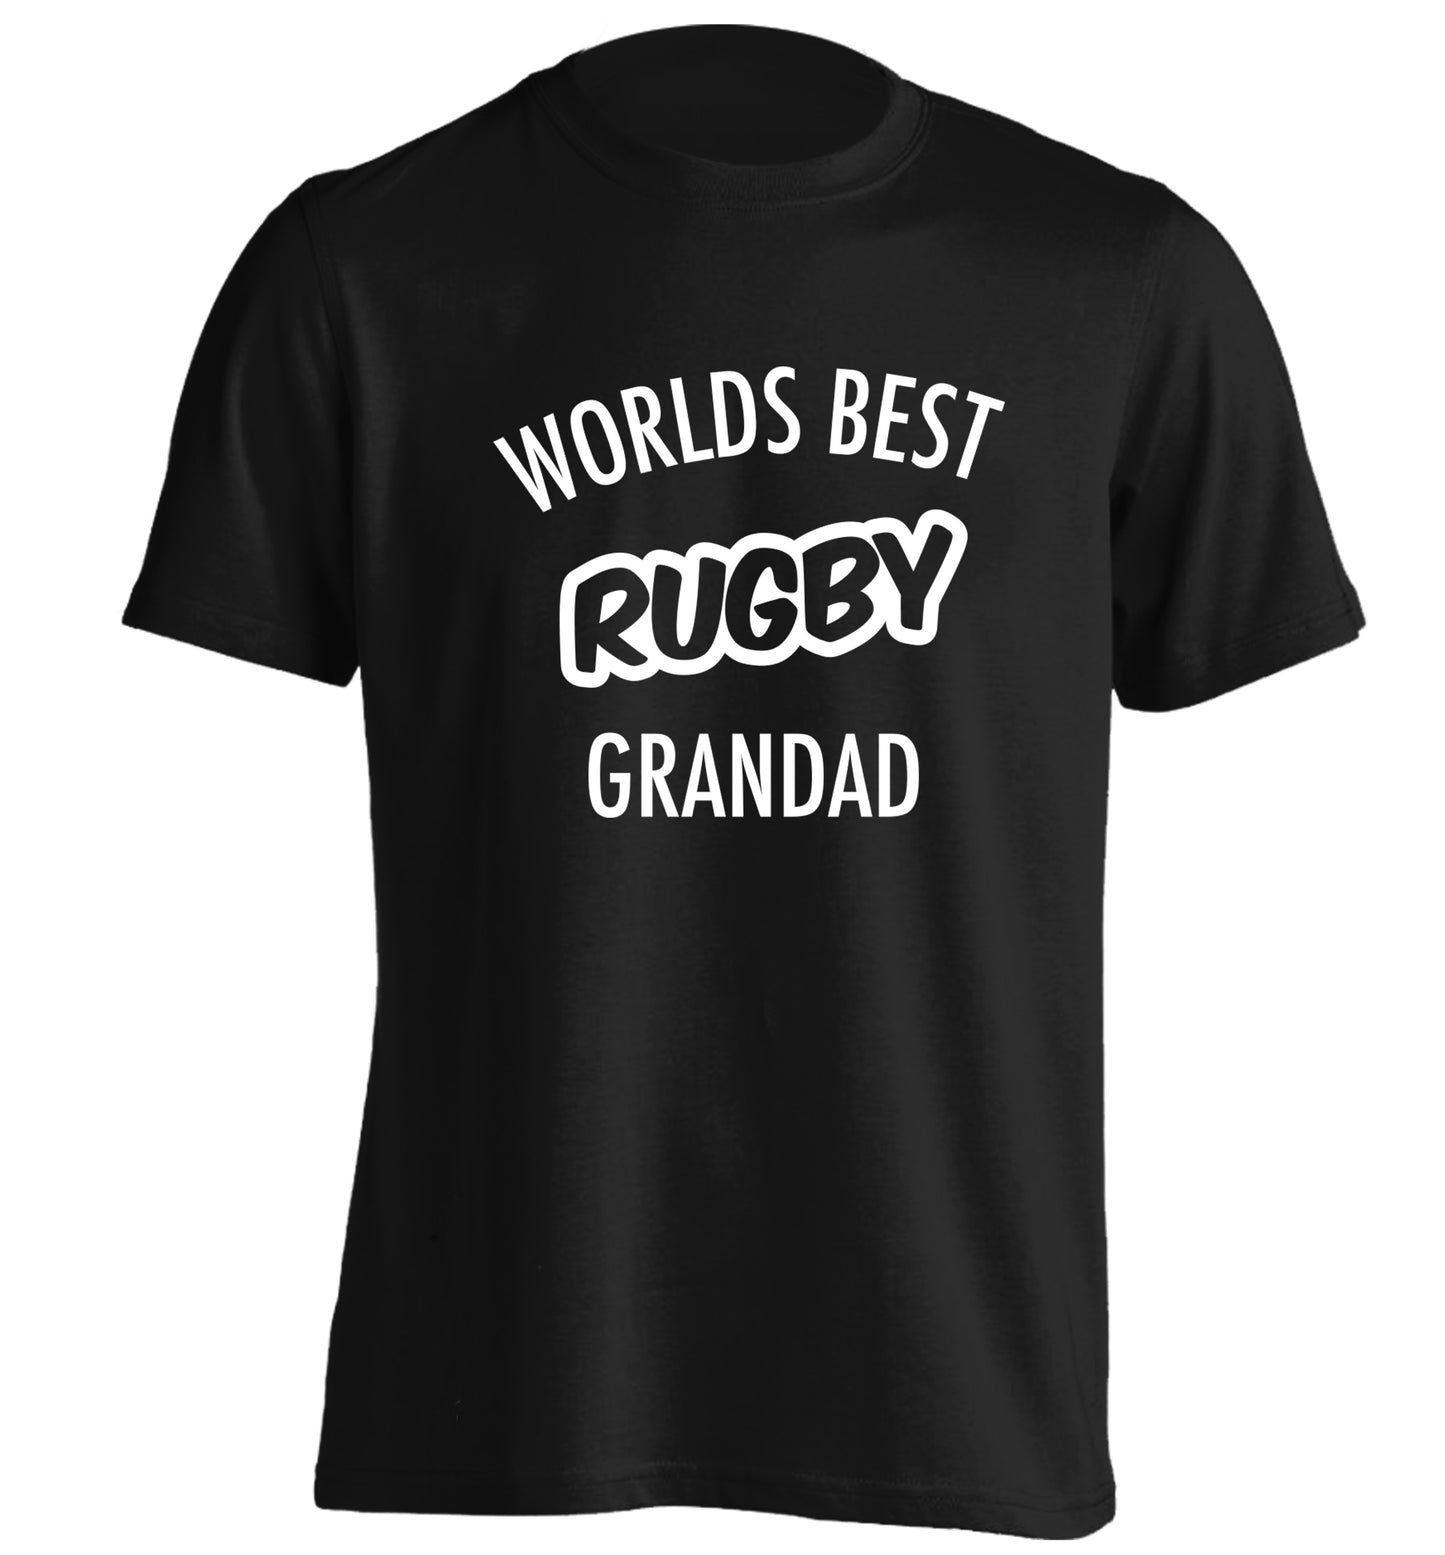 Worlds best rugby grandad adults unisex black Tshirt 2XL